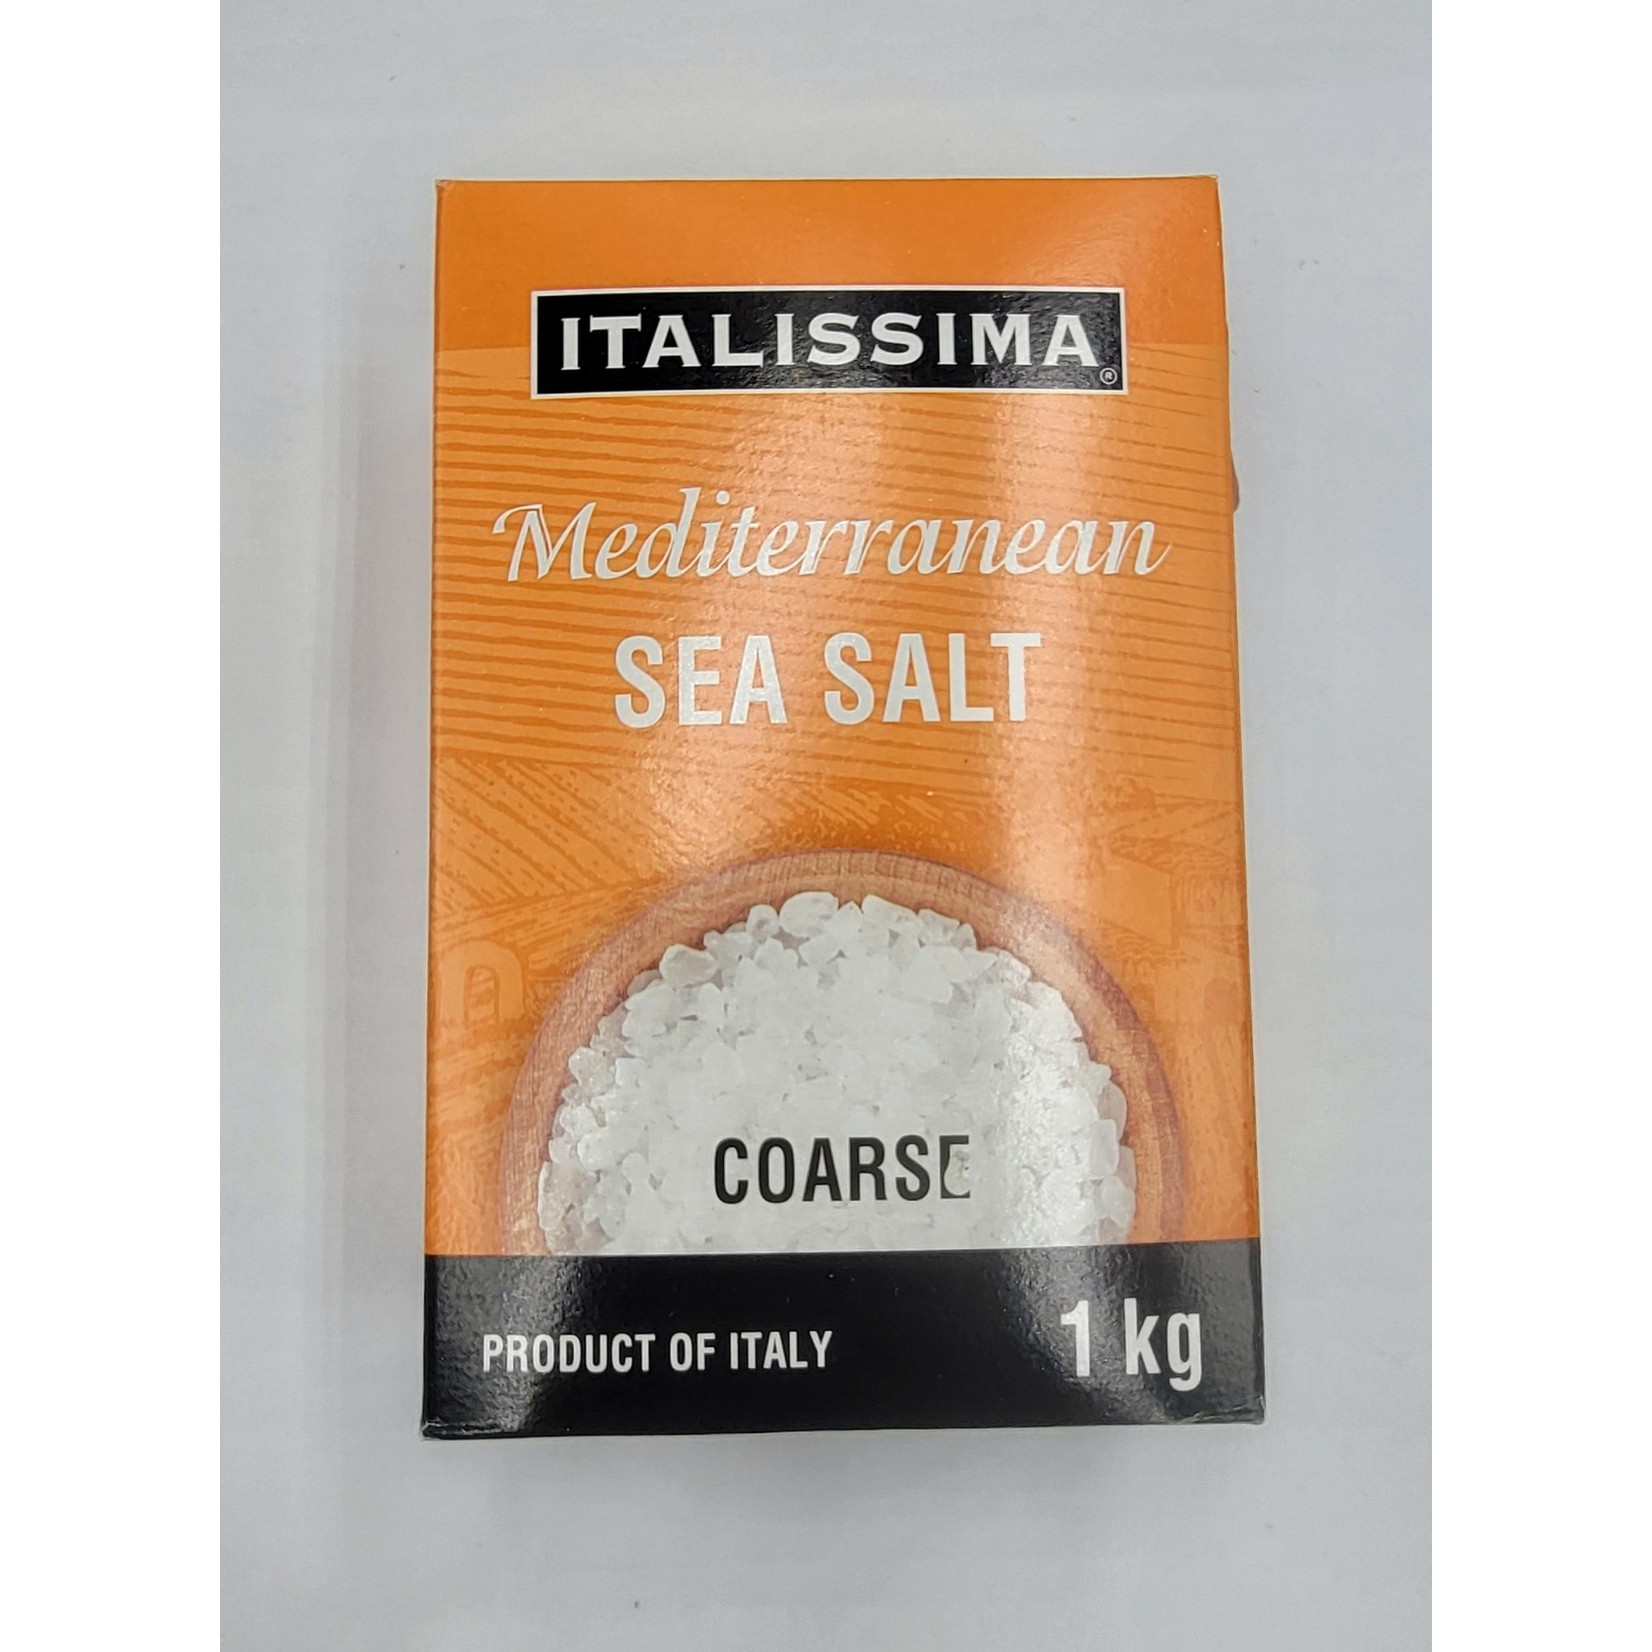 ITALISSIMA Mediterranean Sea Salt Course 1kg